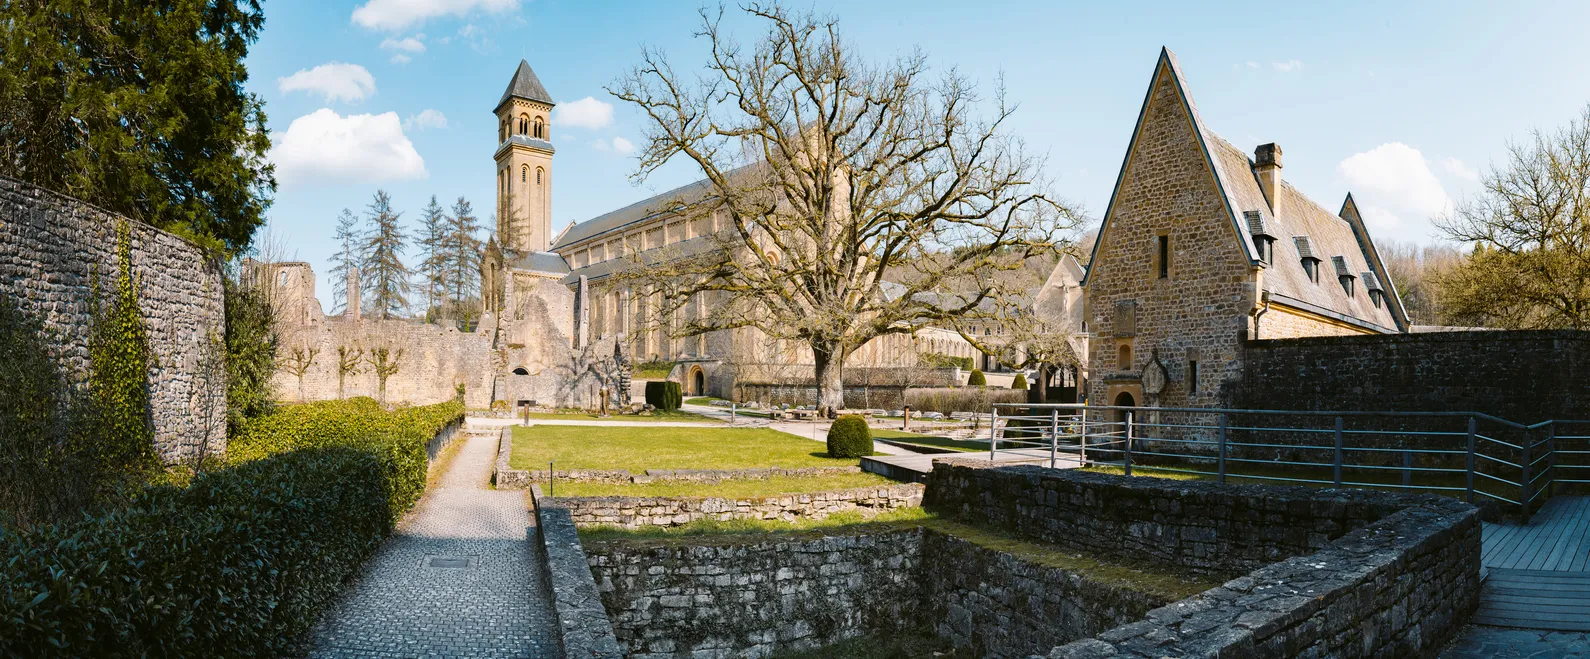 L'abbaye Notre-Dame d'Orval, un monastère cistercien fondé en 1132, en Wallonie, Belgique © iStock / bluejayphoto